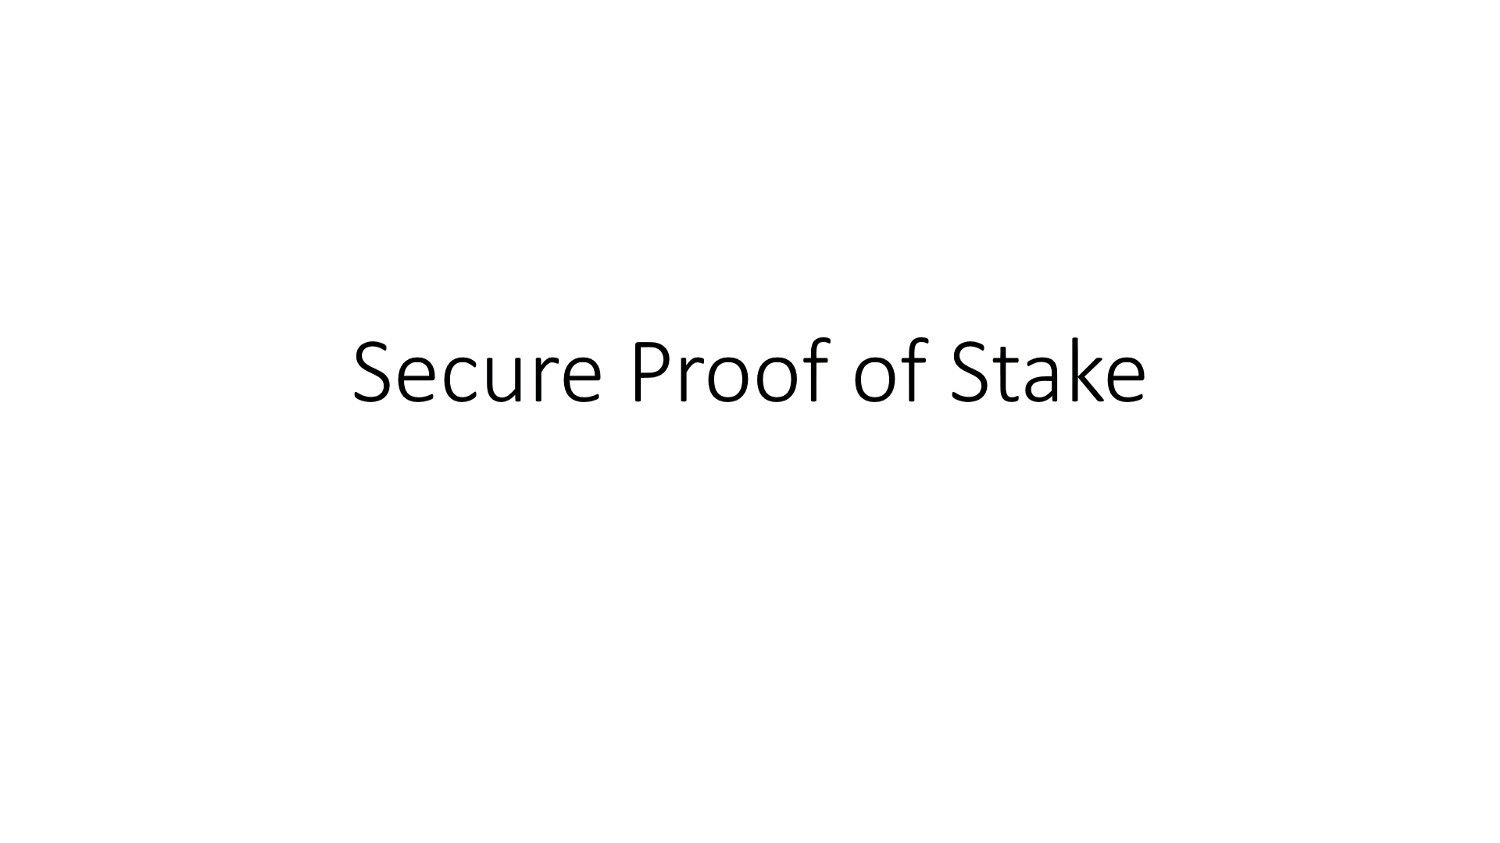 grafische Darstellung von Secure Proof of Stake (SPoS)